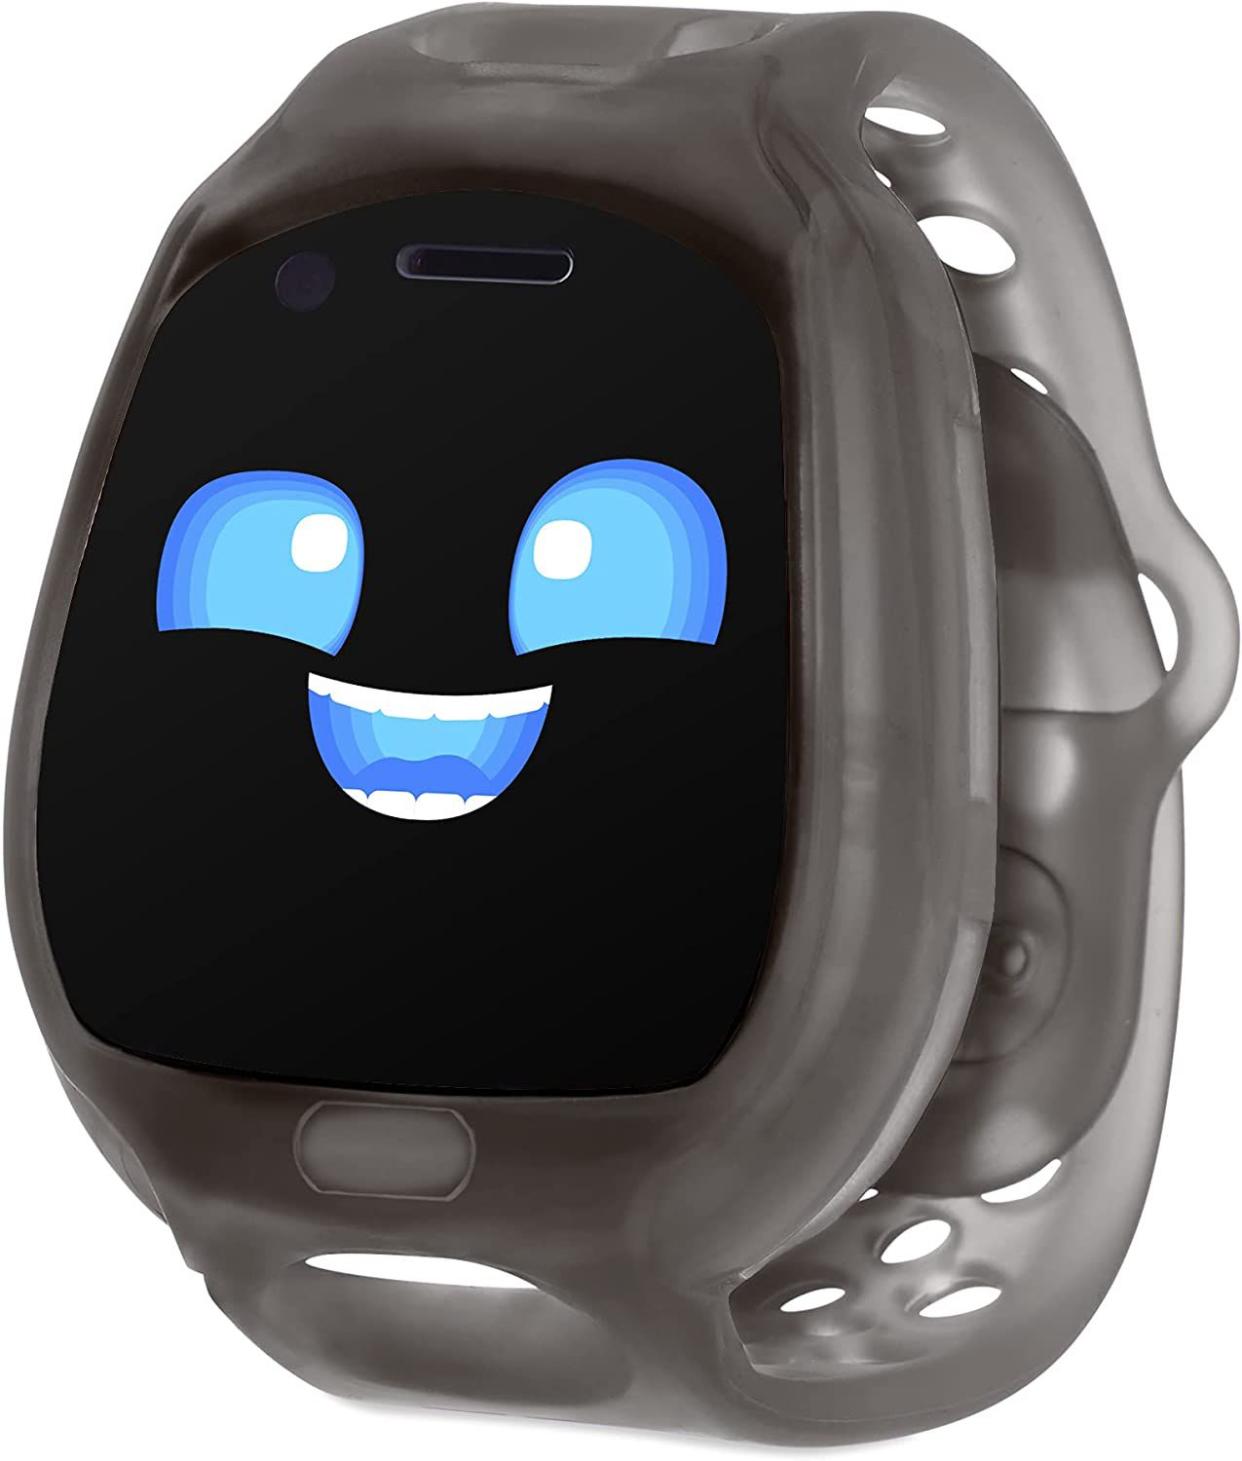 Little Tikes Tobi 2 Robot Smartwatch